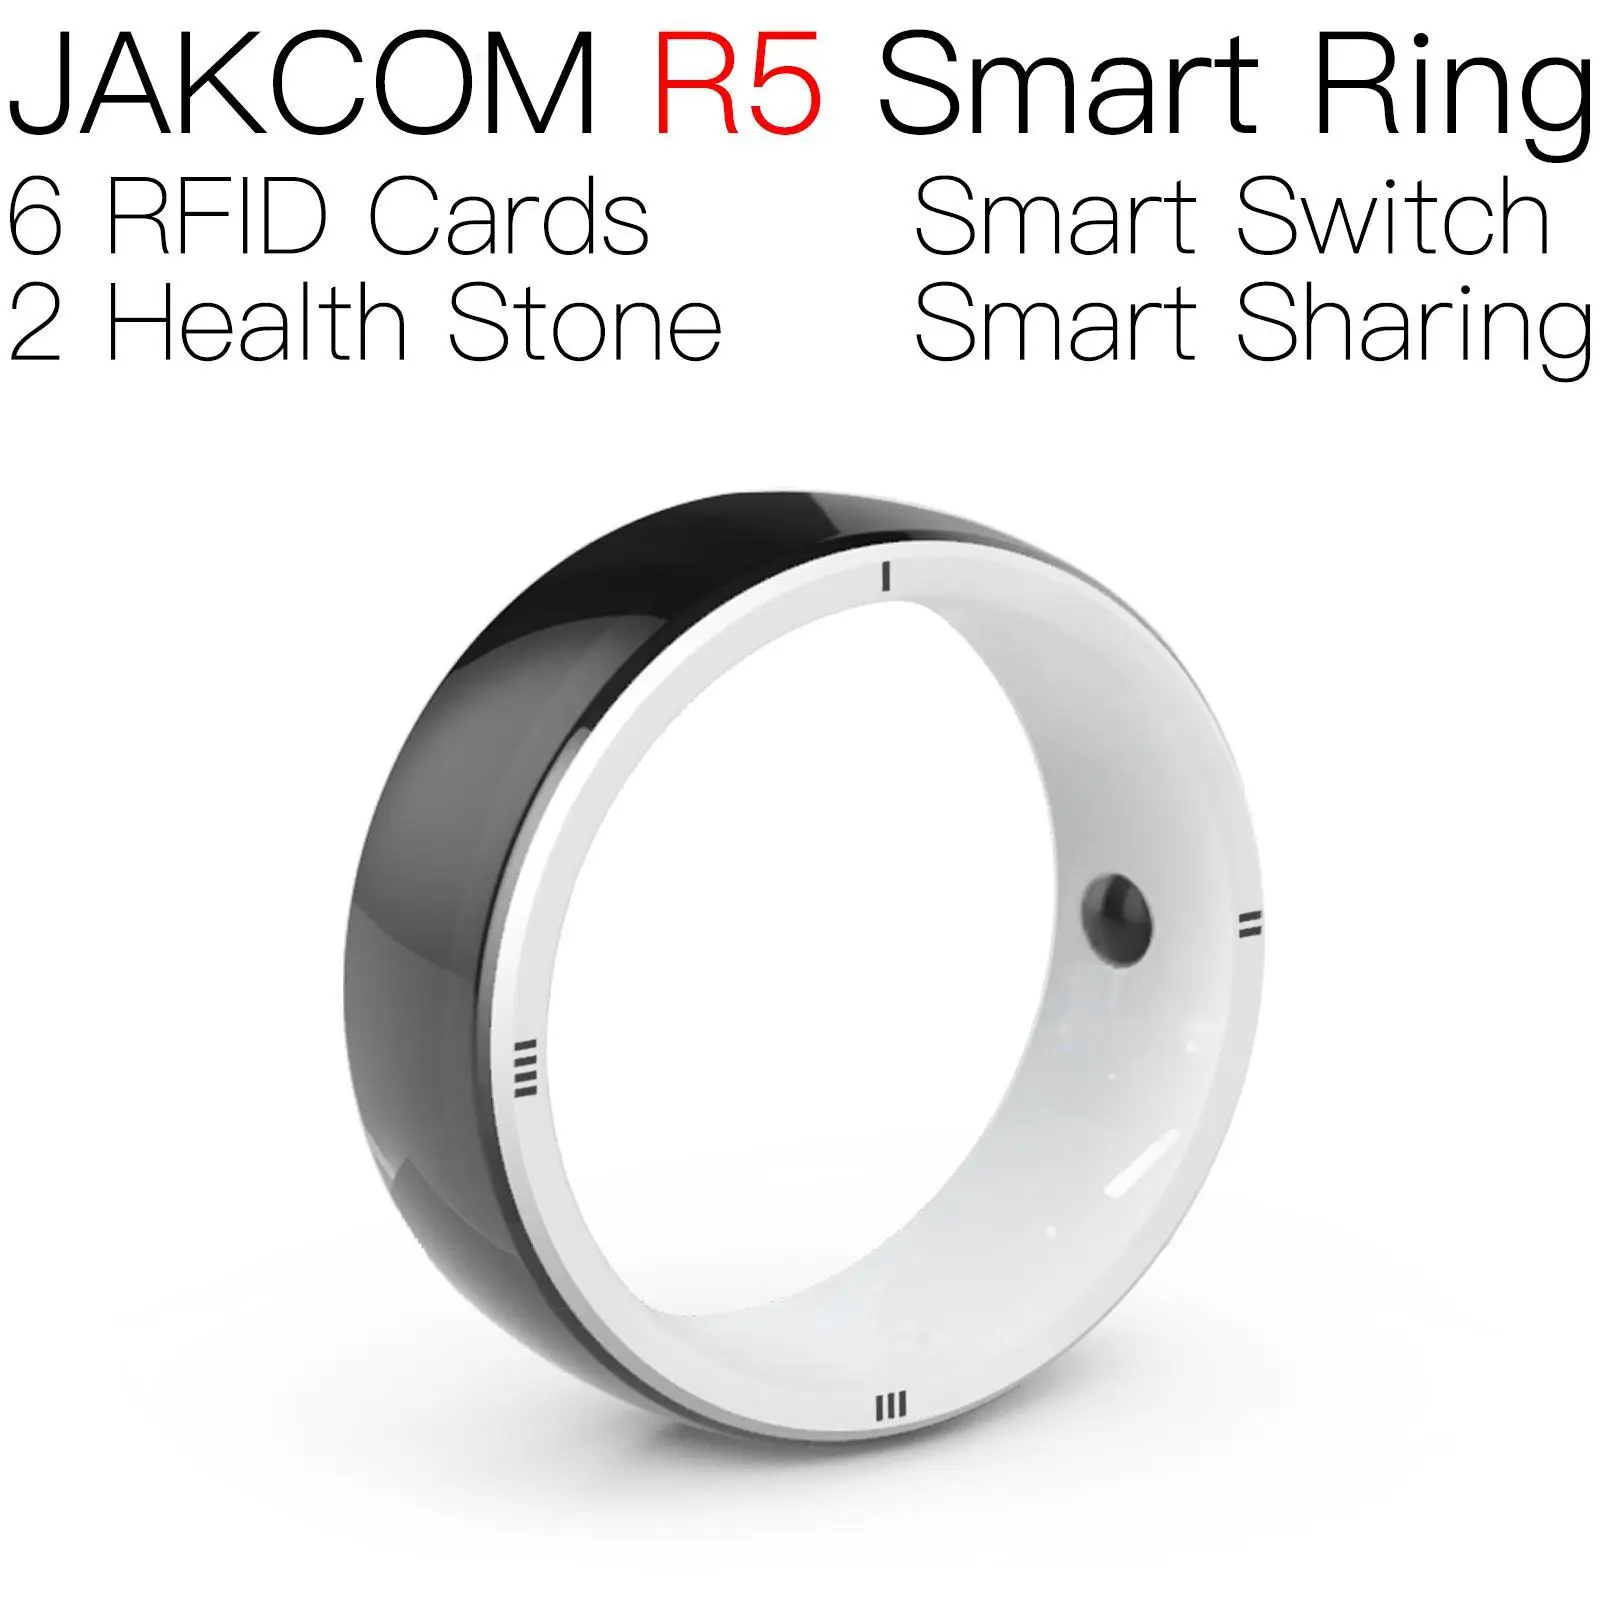 

Умное кольцо JAKCOM R5 лучше, чем умные часы google home electric store, удаленные Смарт-часы snapdragon 870 x7